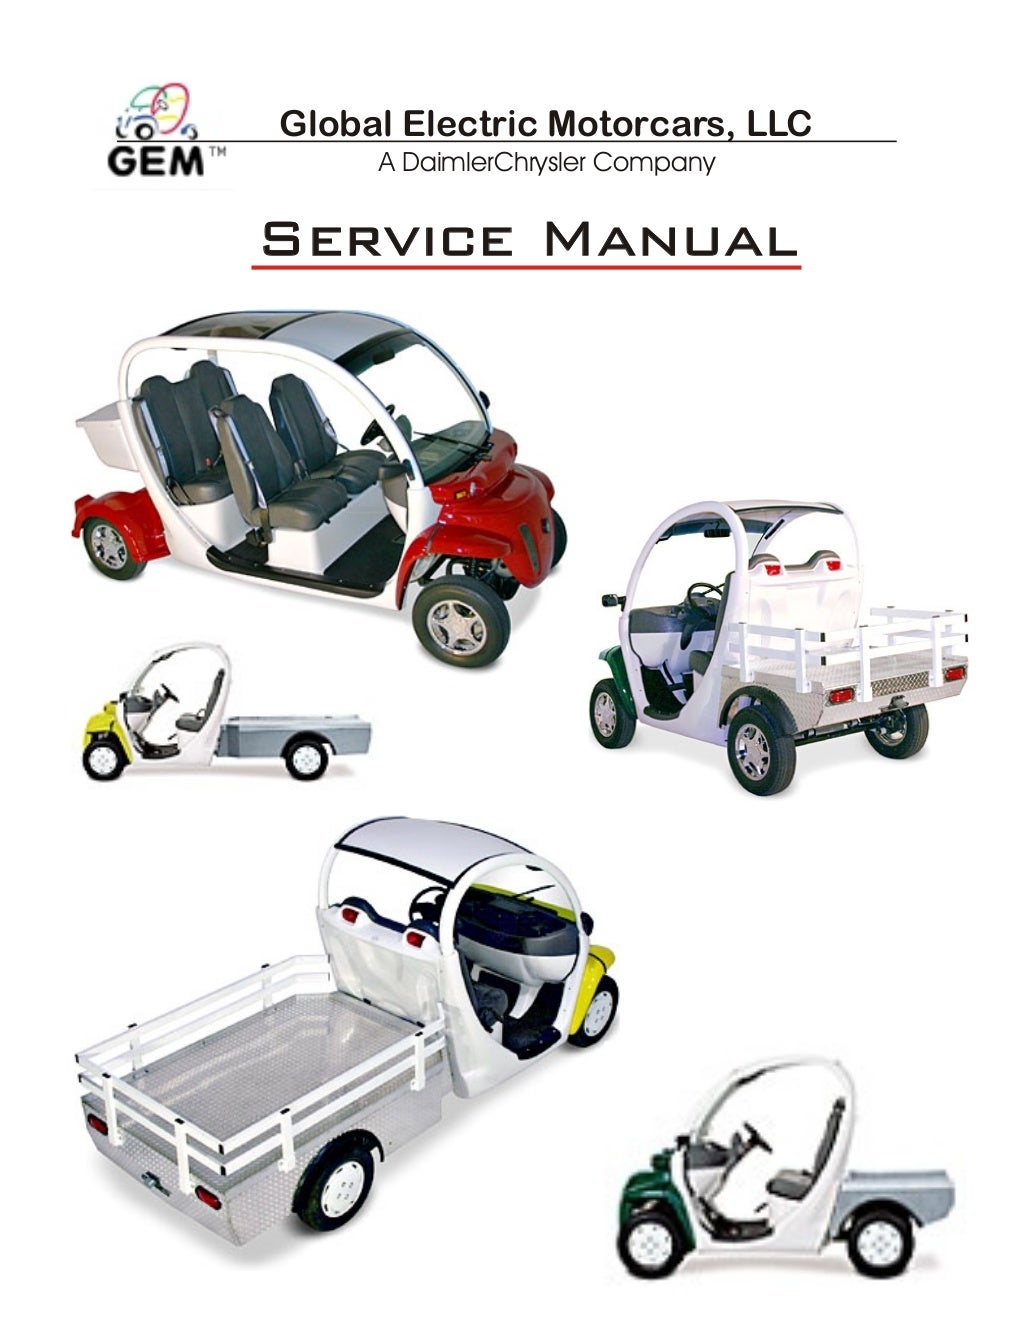 2006 GEM Global Electric Motorcars Service Repair Manual